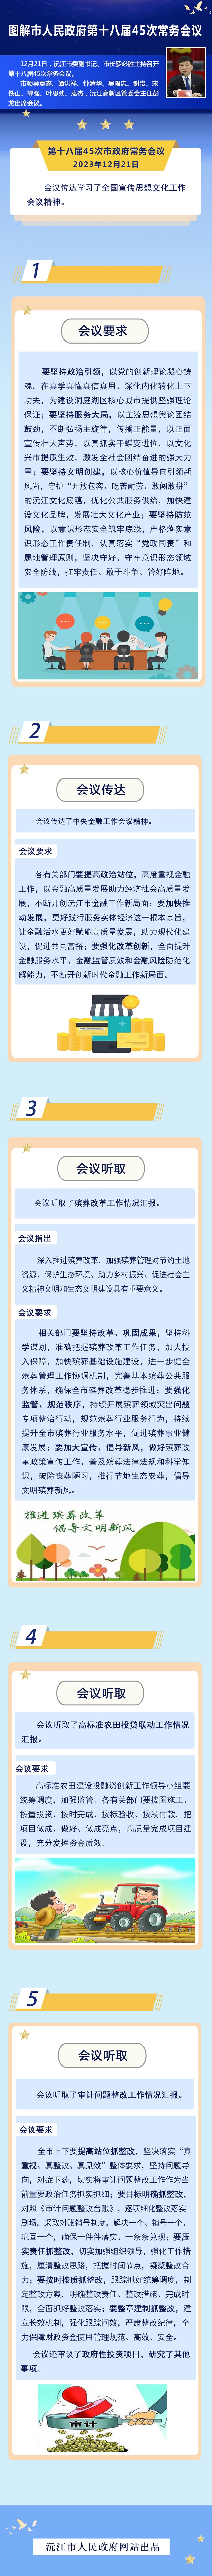 【图解】沅江市人民政府第十八届45次常务会议